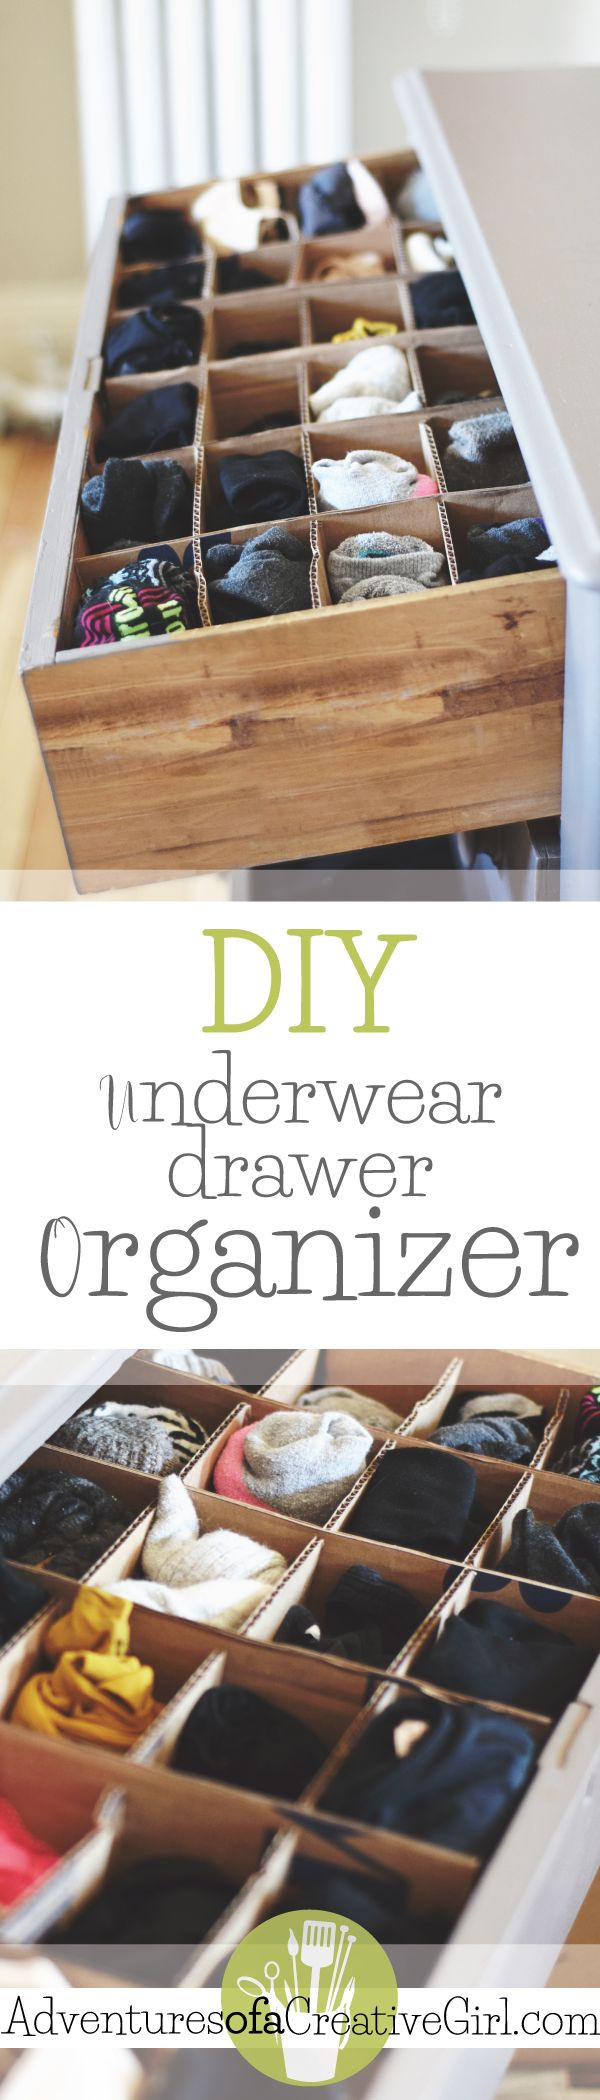 Best ideas about Underwear Organizer DIY
. Save or Pin Underwear Drawer Organizer DIY Now.